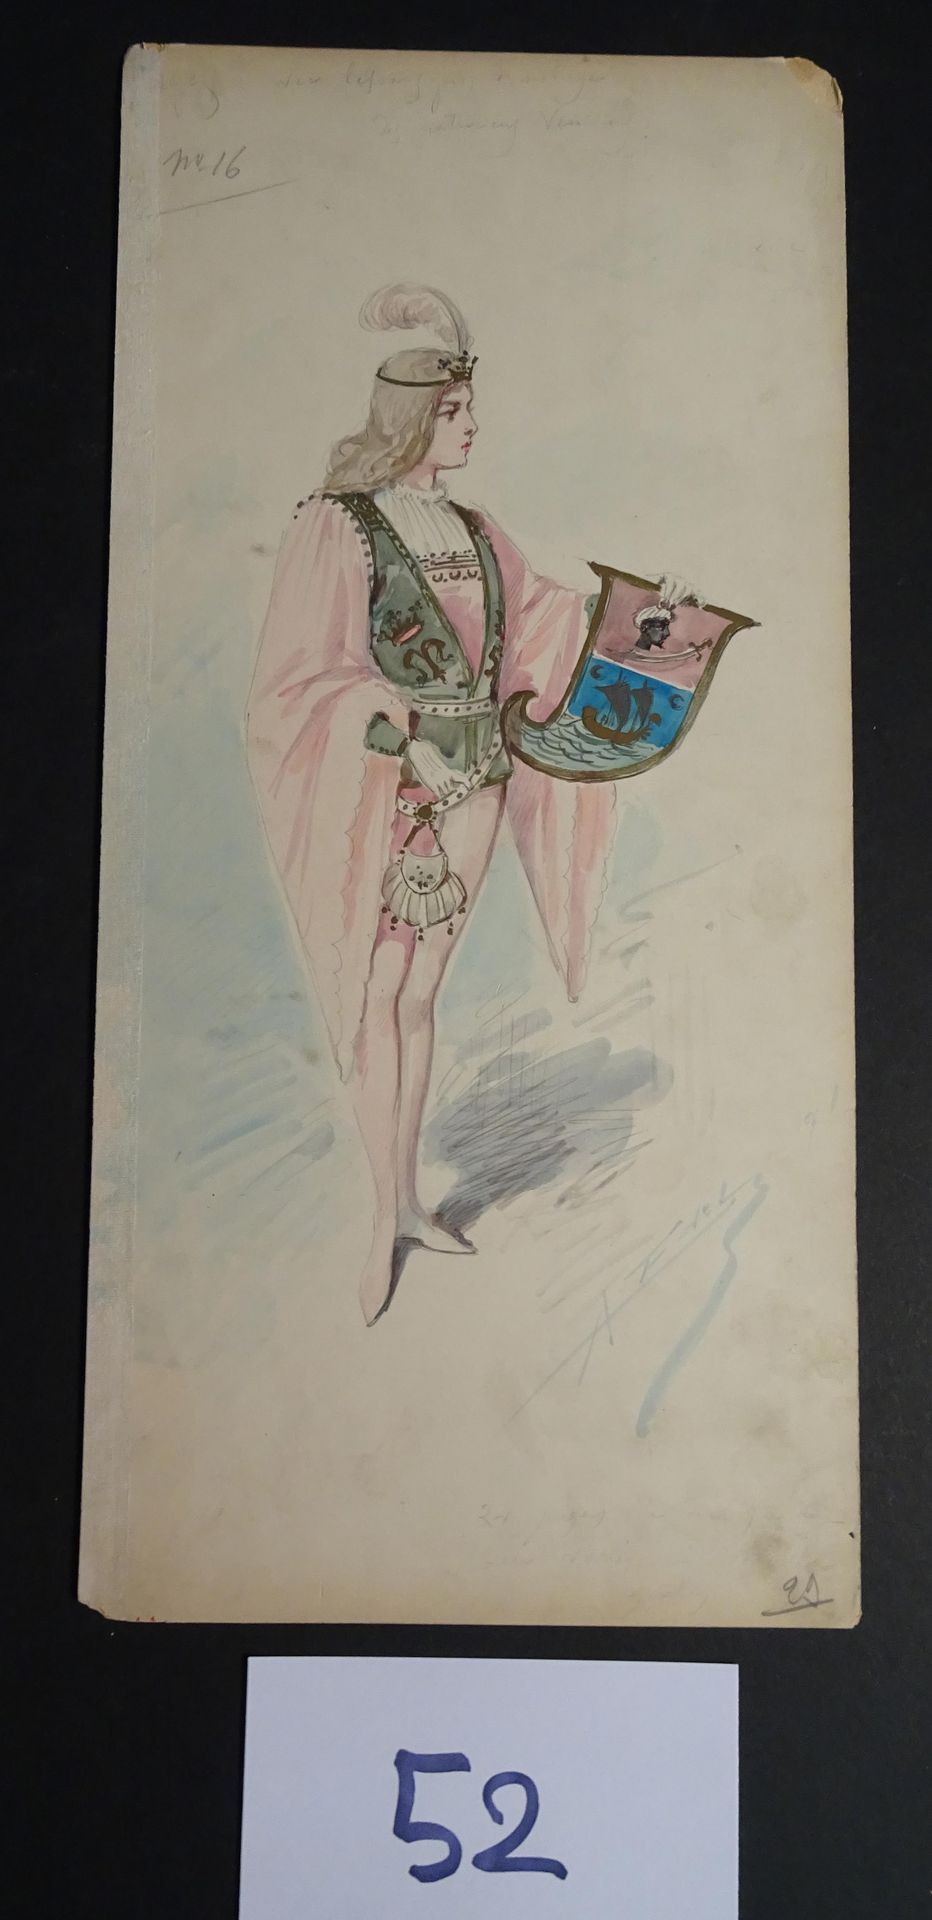 EDEL EDEL ALFREDO ( 1859-1912)

"Pagine". Guazzo, acquerello e inchiostro firmat&hellip;